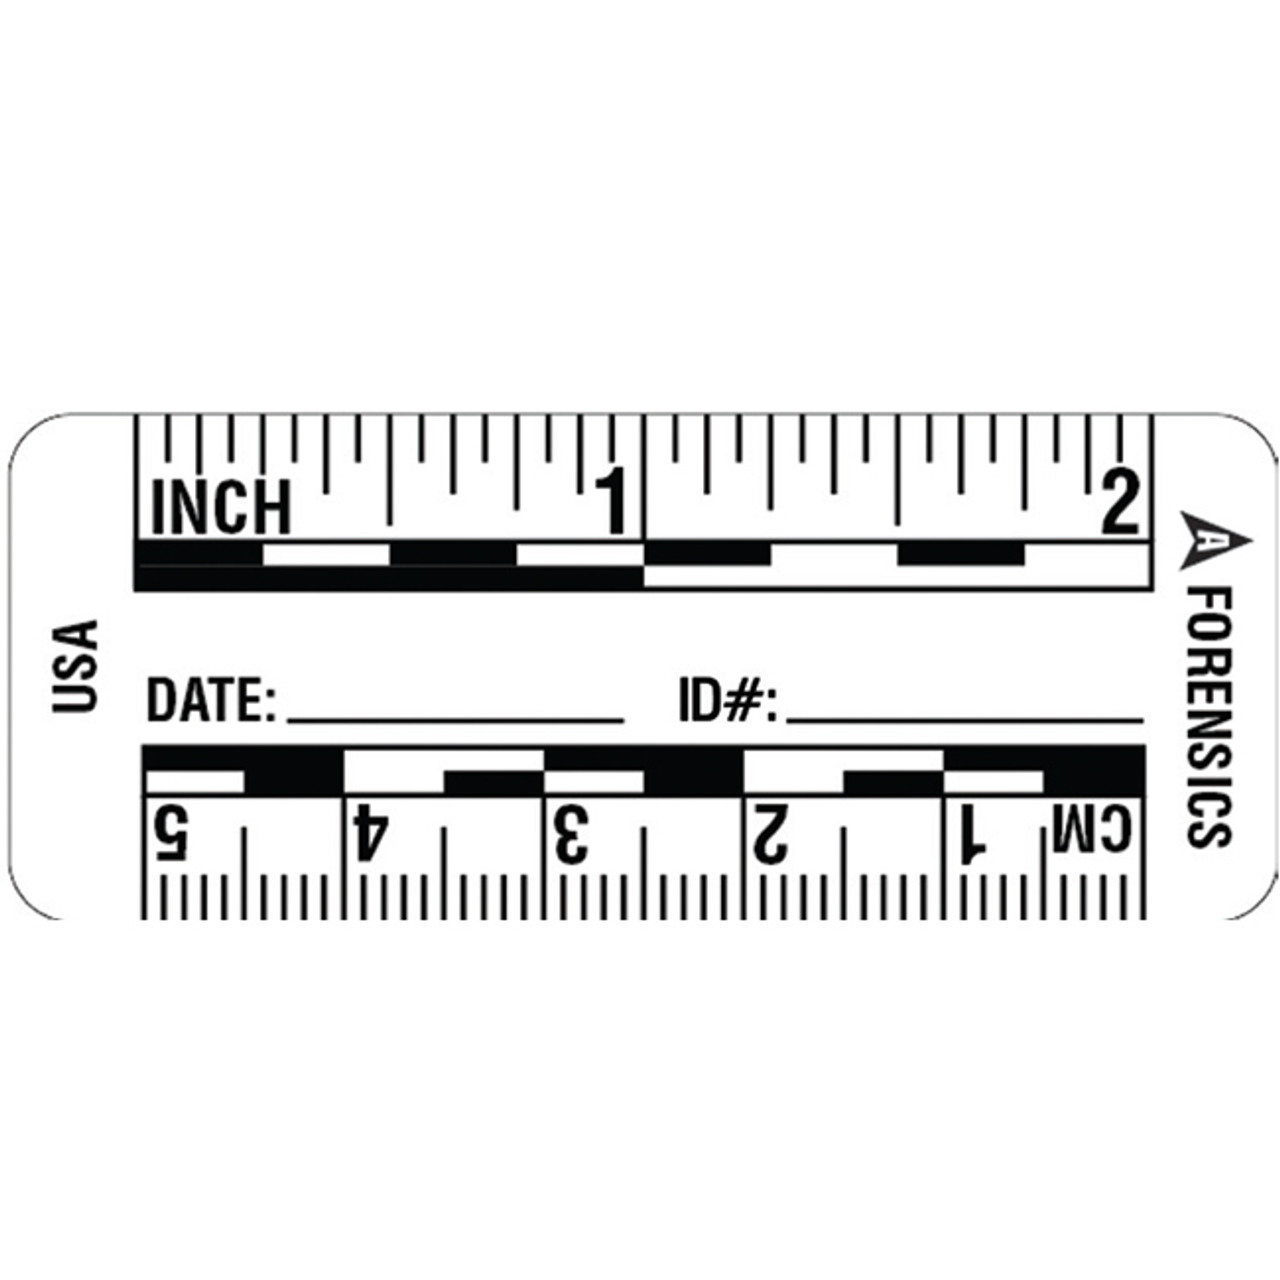 centimeter ruler clipart black and white